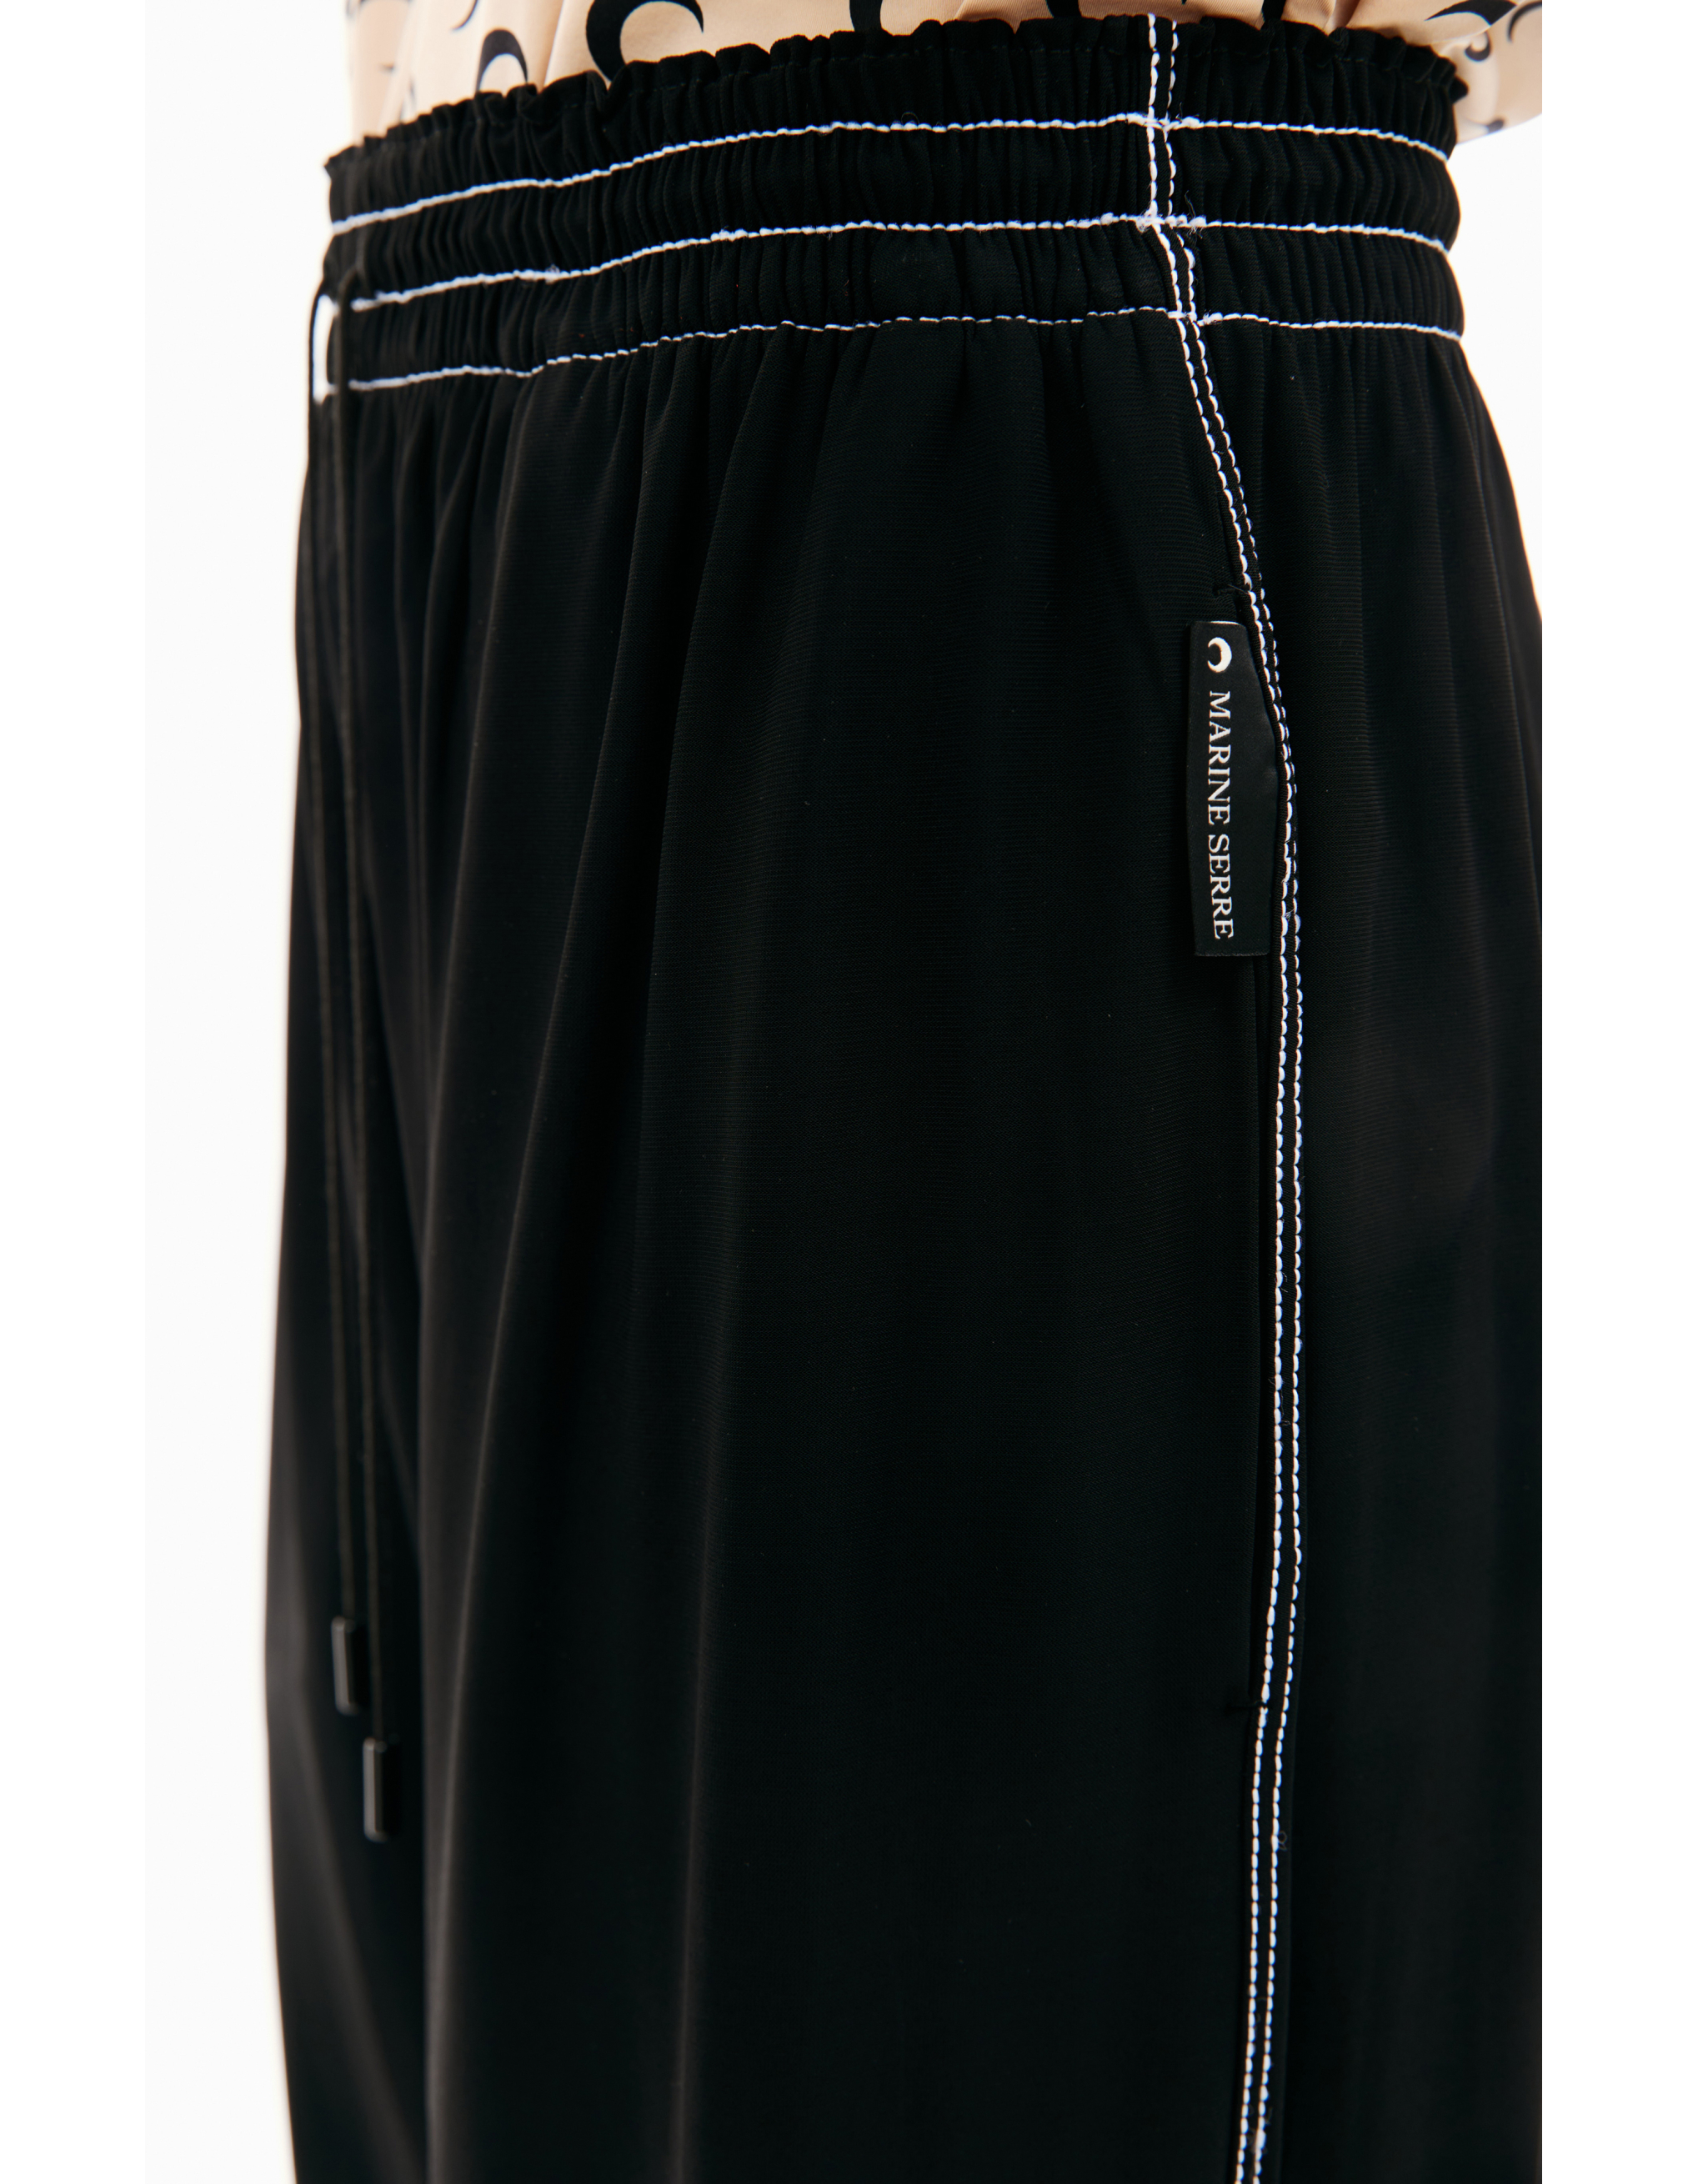 Прямые брюки с контрастной строчкой MARINE SERRE MPA033/CJER0022/BK99, размер S;M;L;XL MPA033/CJER0022/BK99 - фото 5